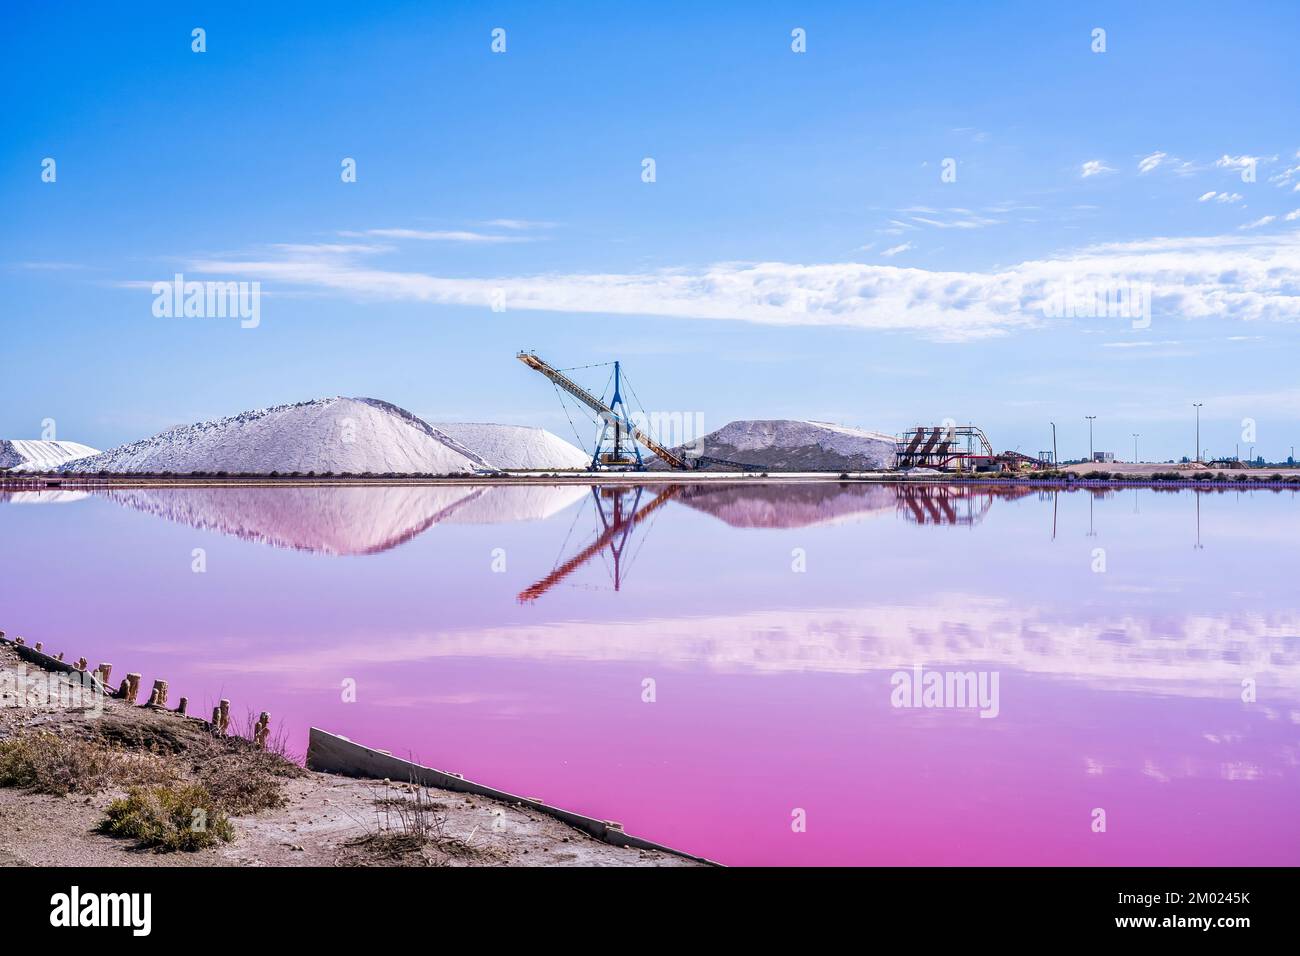 Die Salzproduktion, die rosafarbene Lagune und die Hügel im Mittelmeer befinden sich in Aigues-Mortes. Camargue, Frankreich. Fotos in hoher Qualität Stockfoto